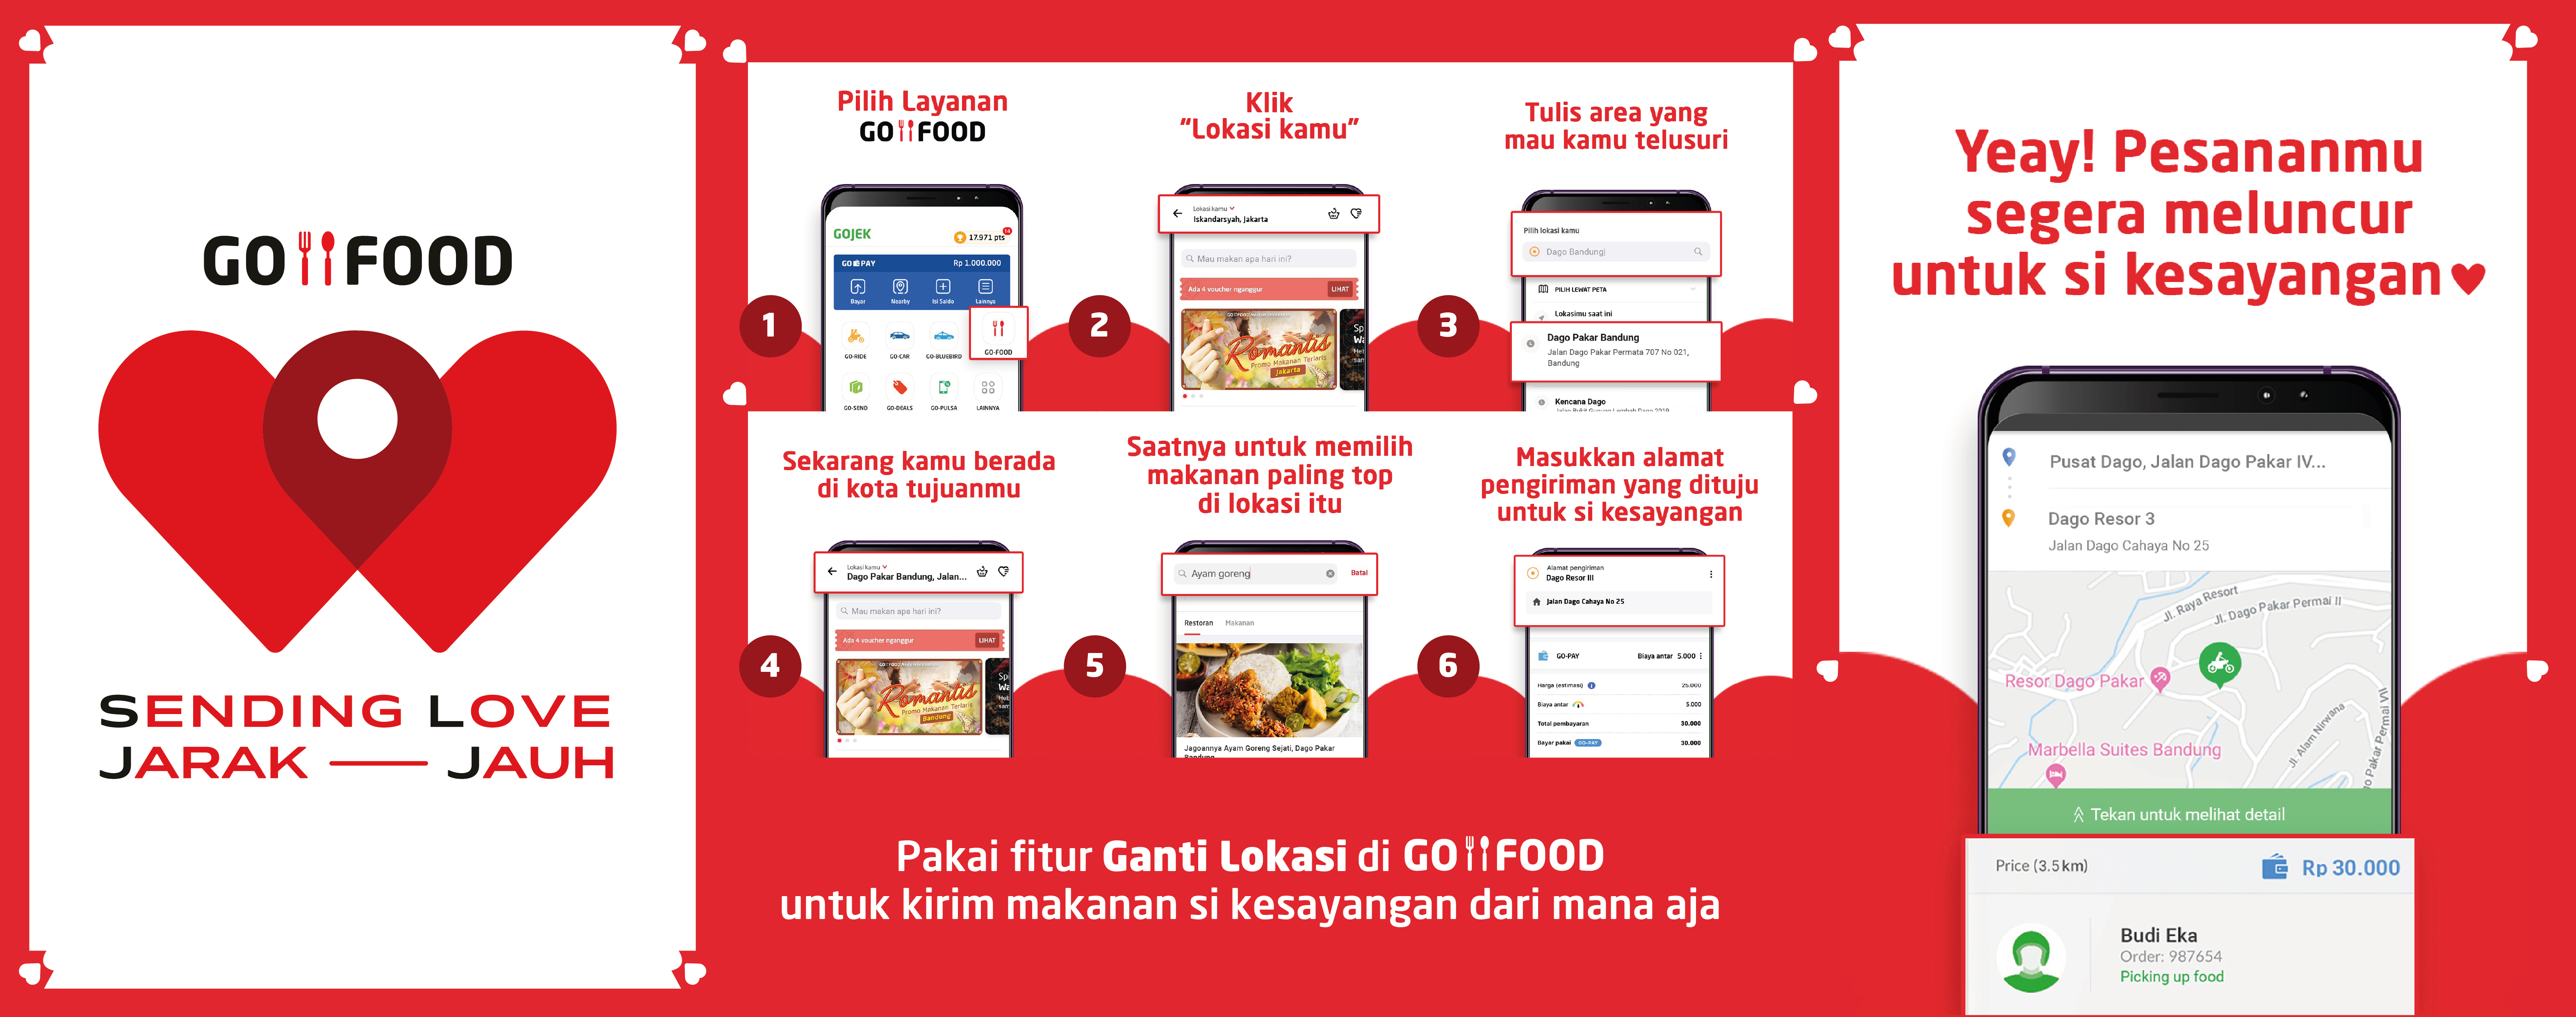 Cara memakai fitur Ganti Lokasi di Go-Food | Foto: Go-Jek